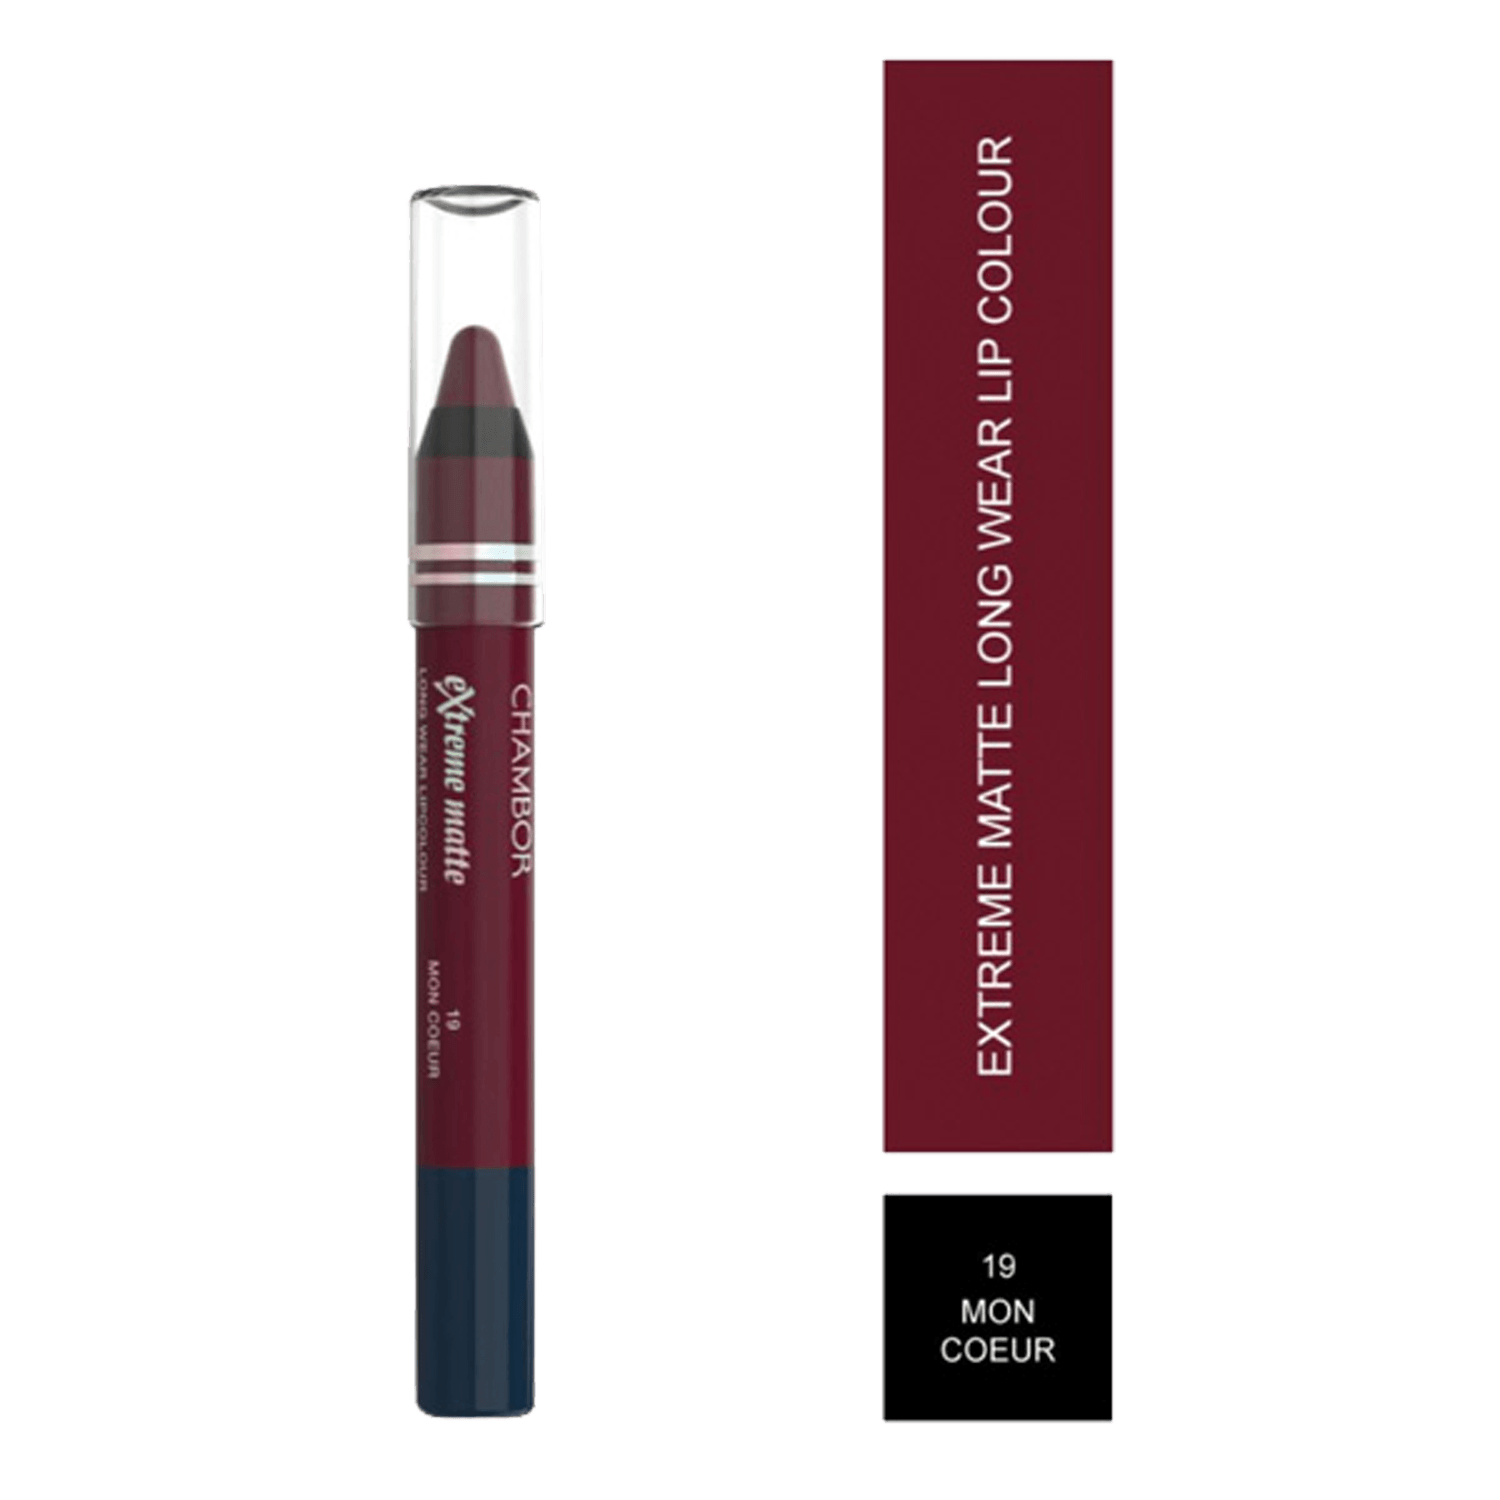 Chambor | Chambor Extreme Matte Long Wear Lip Colour Make up Les Meringues Collection - Mon Coeur, 19 (2.8g)